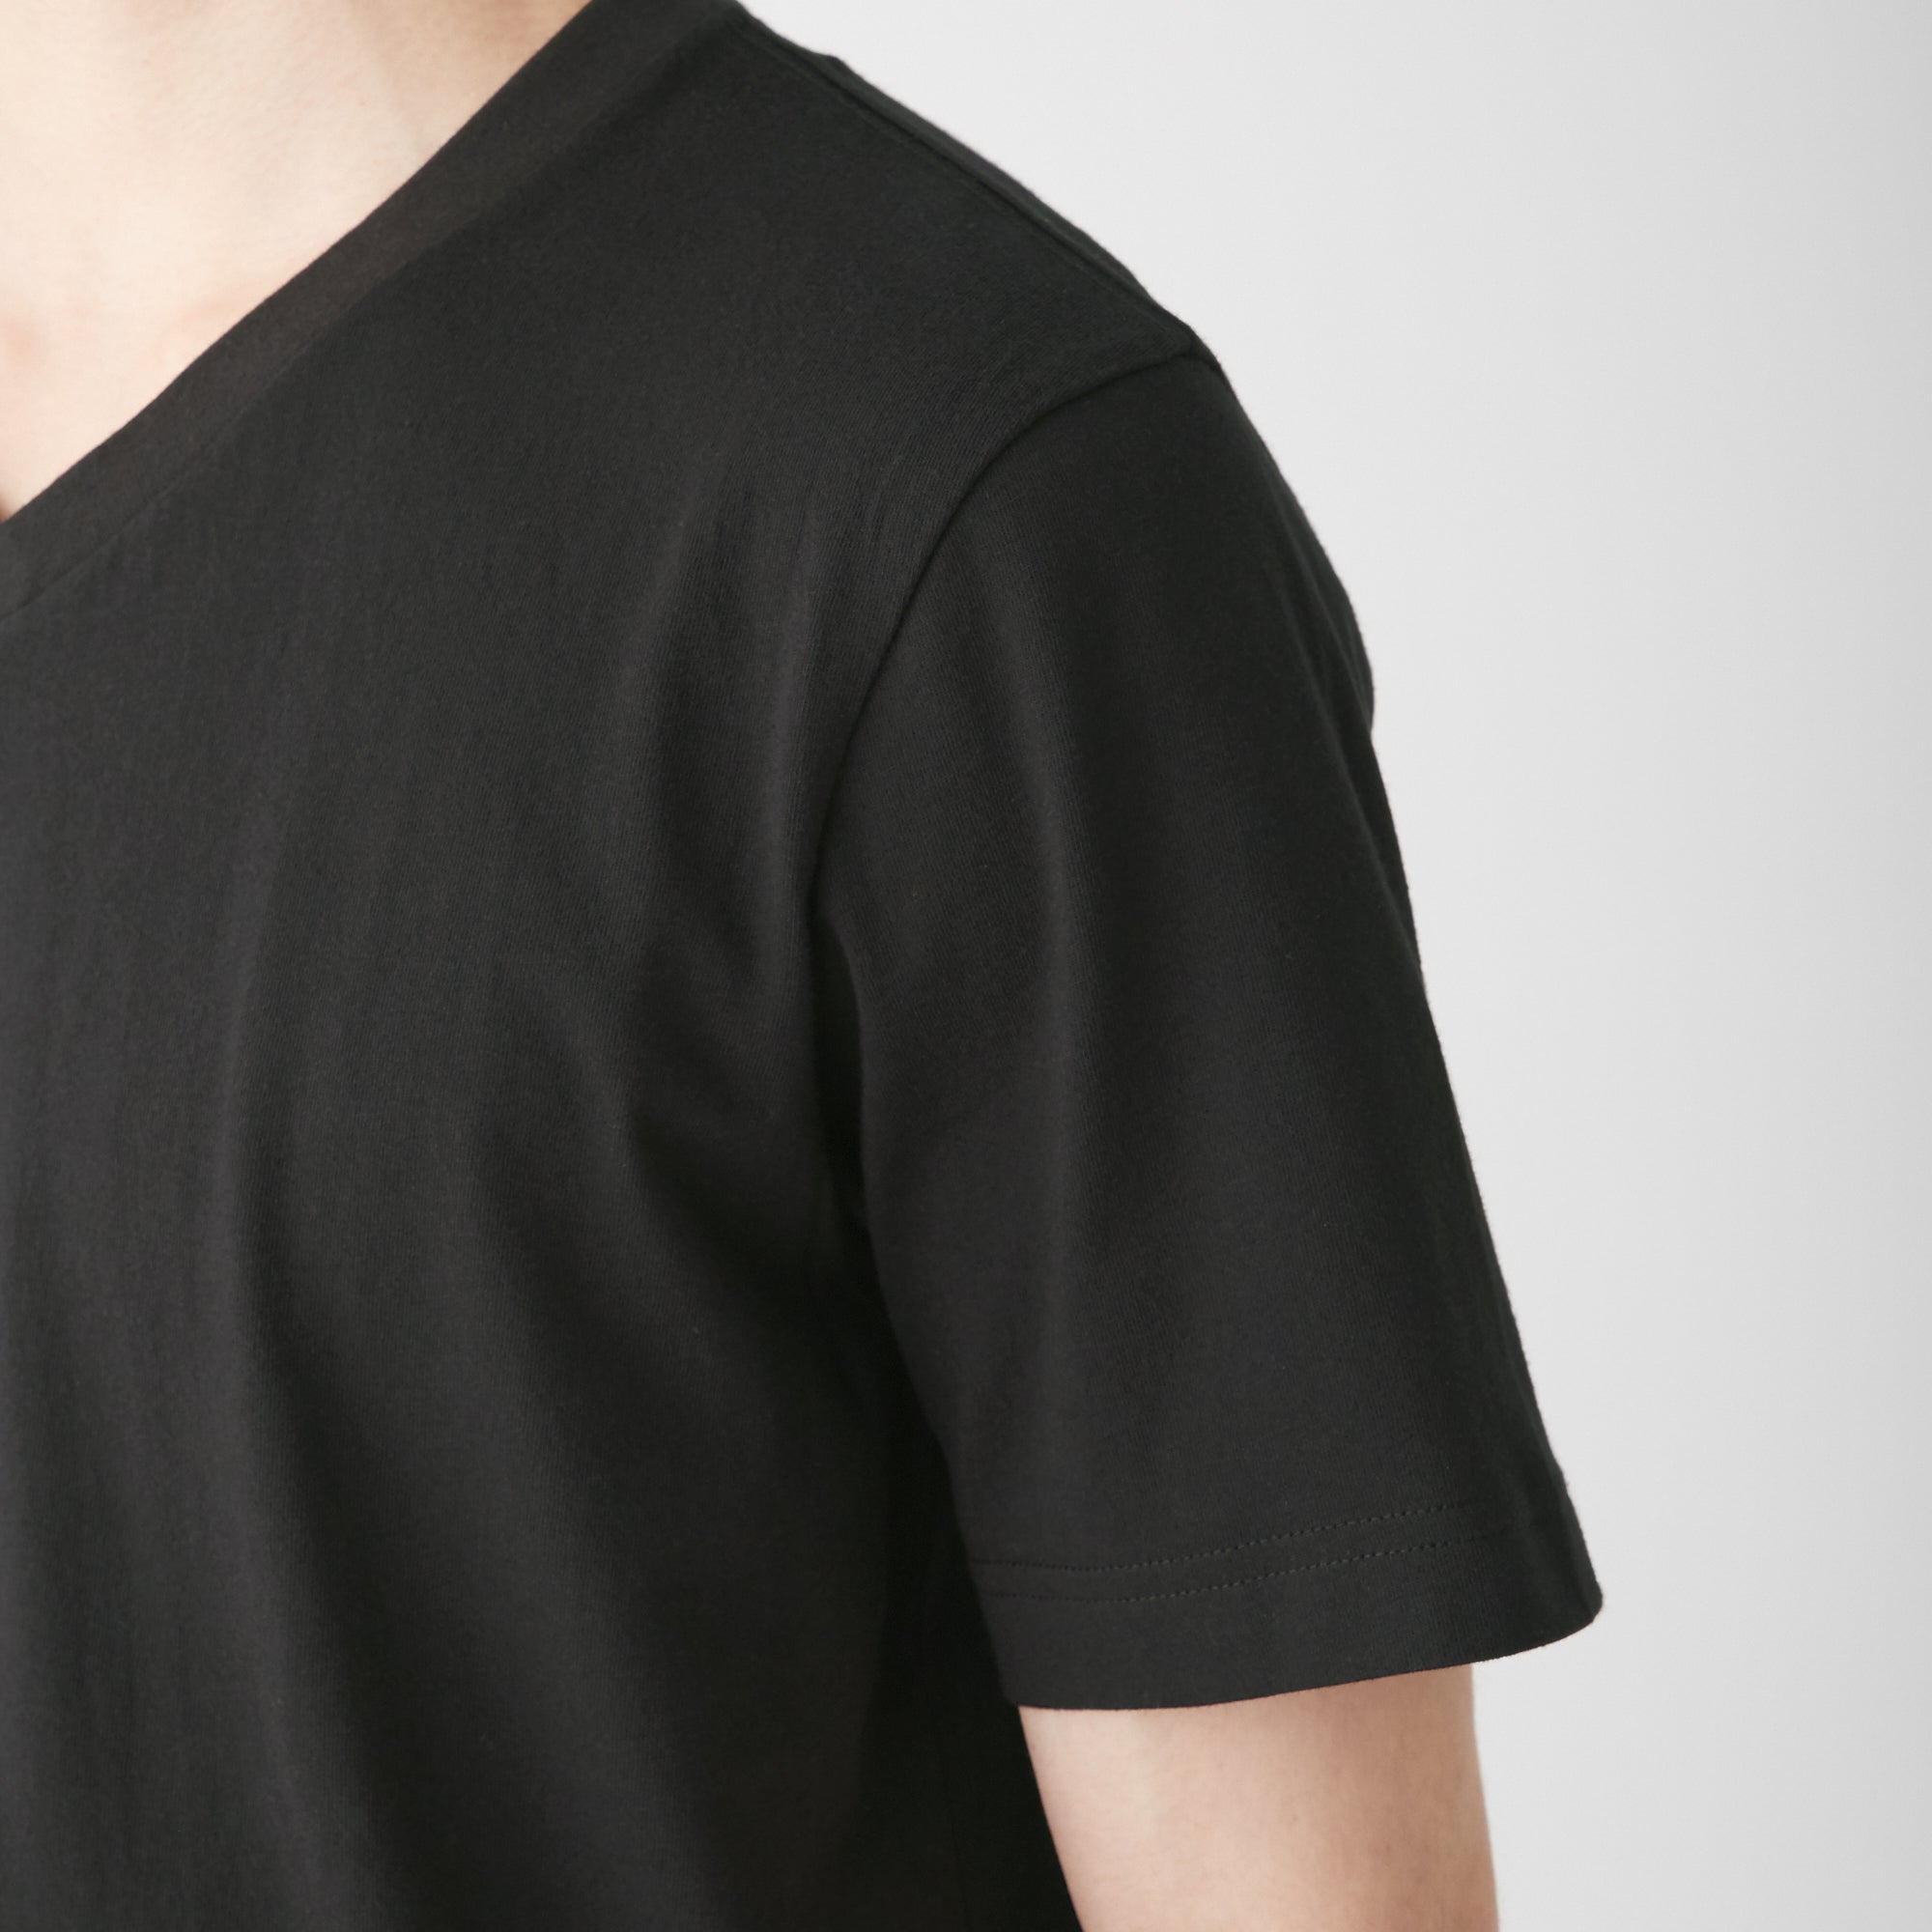 Men's V-Neck Short Sleeve T-Shirt